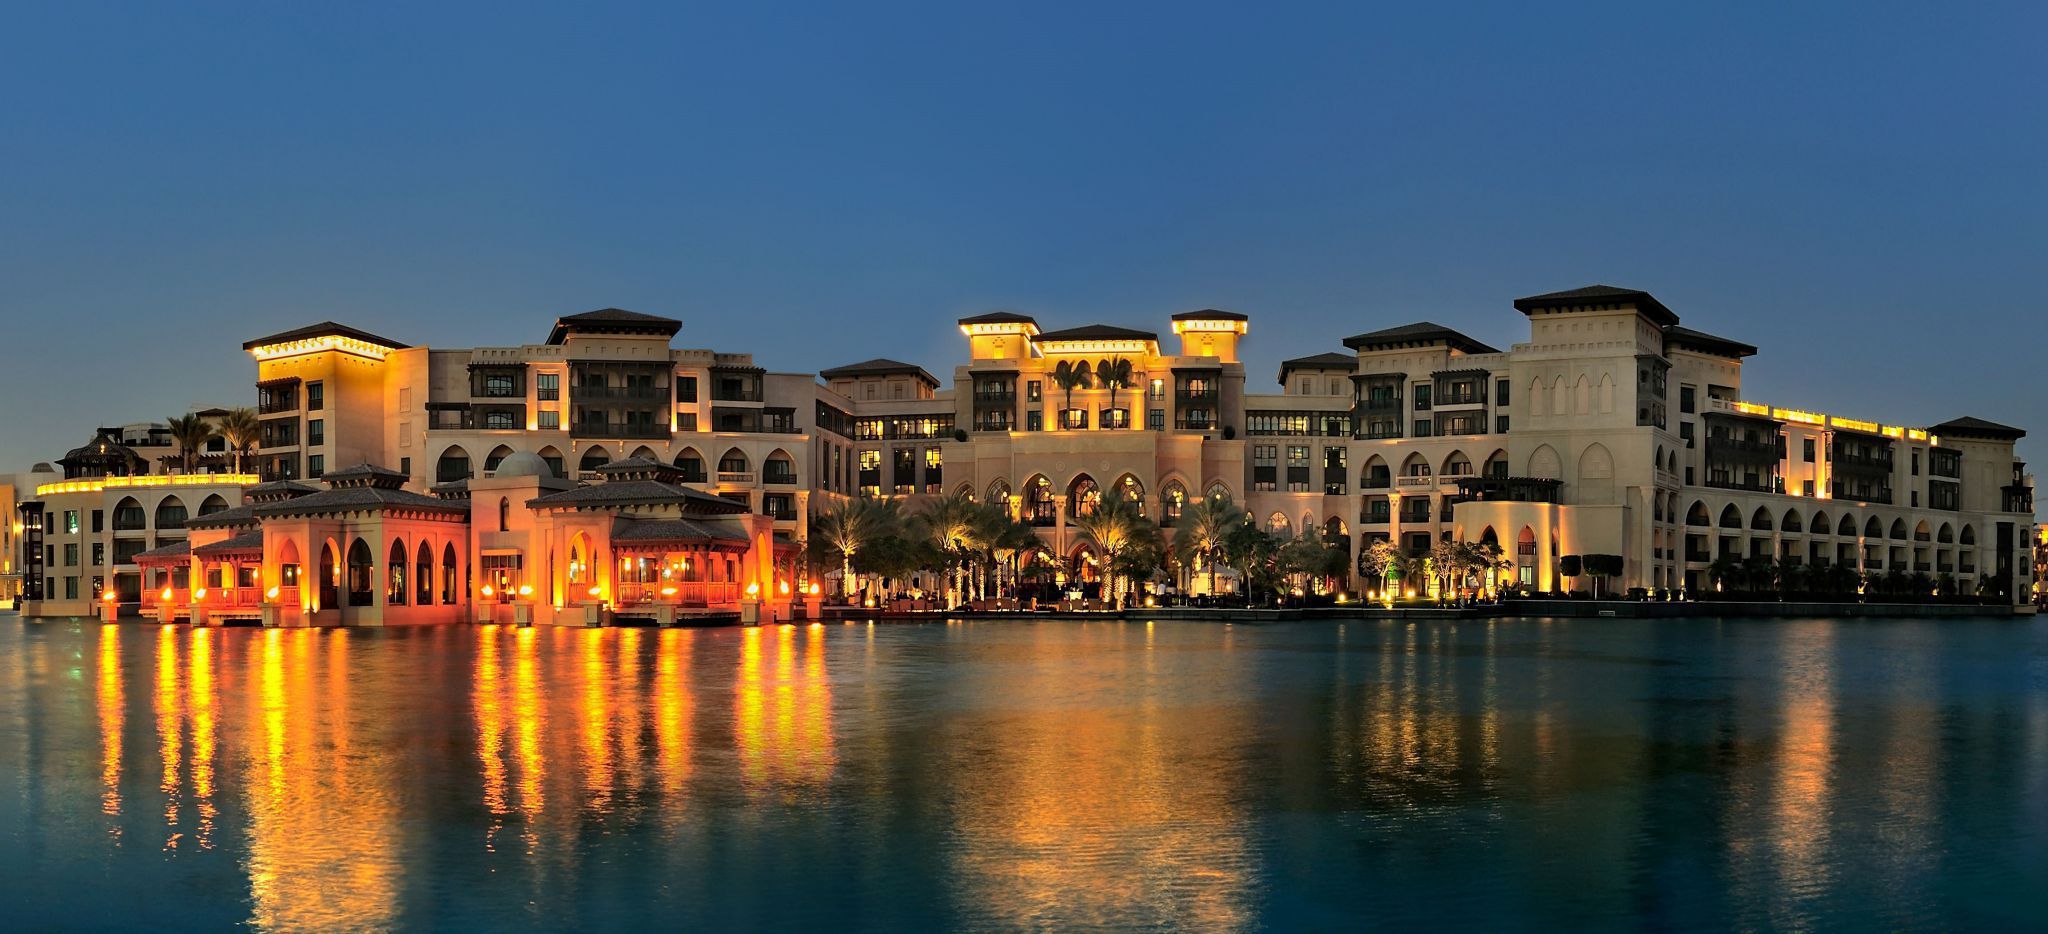 Skyline des "The Palace" über den See der "Dubai Fountains" aus fotografiert